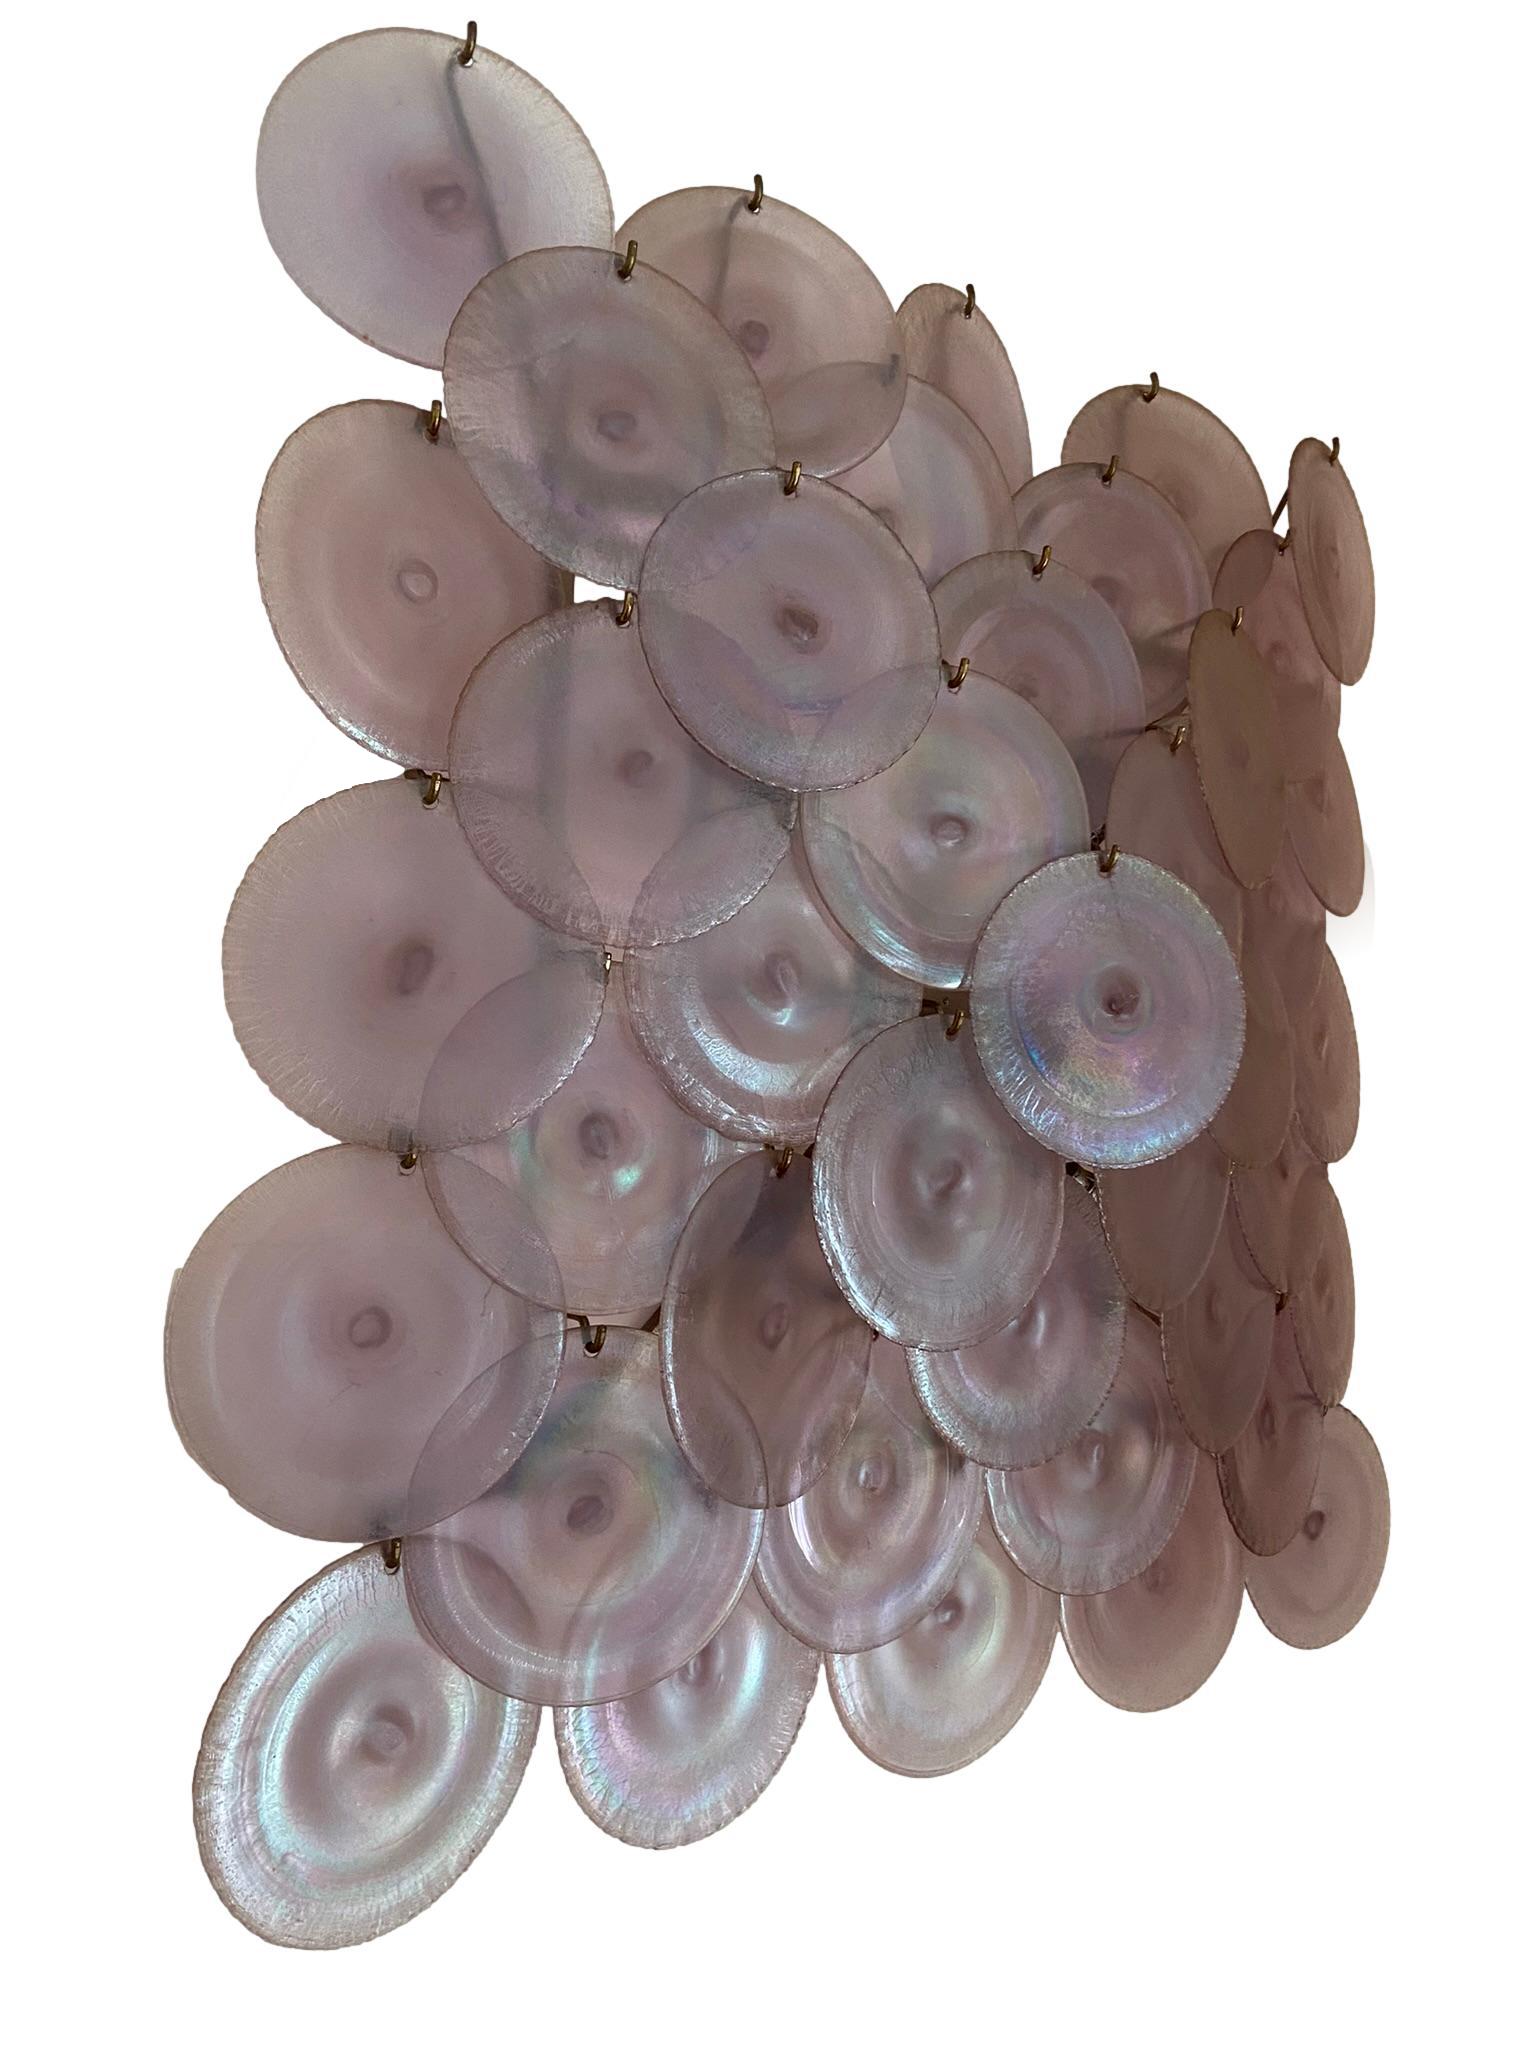 Grande applique en forme de disque en verre irisé de Murano, conçue par Carlo Nason pour Mazzega Murano, Italie, 1960. L'applique repose sur une structure en métal nickelé avec cinq sources lumineuses.  Très bon état.  Le verre, aujourd'hui